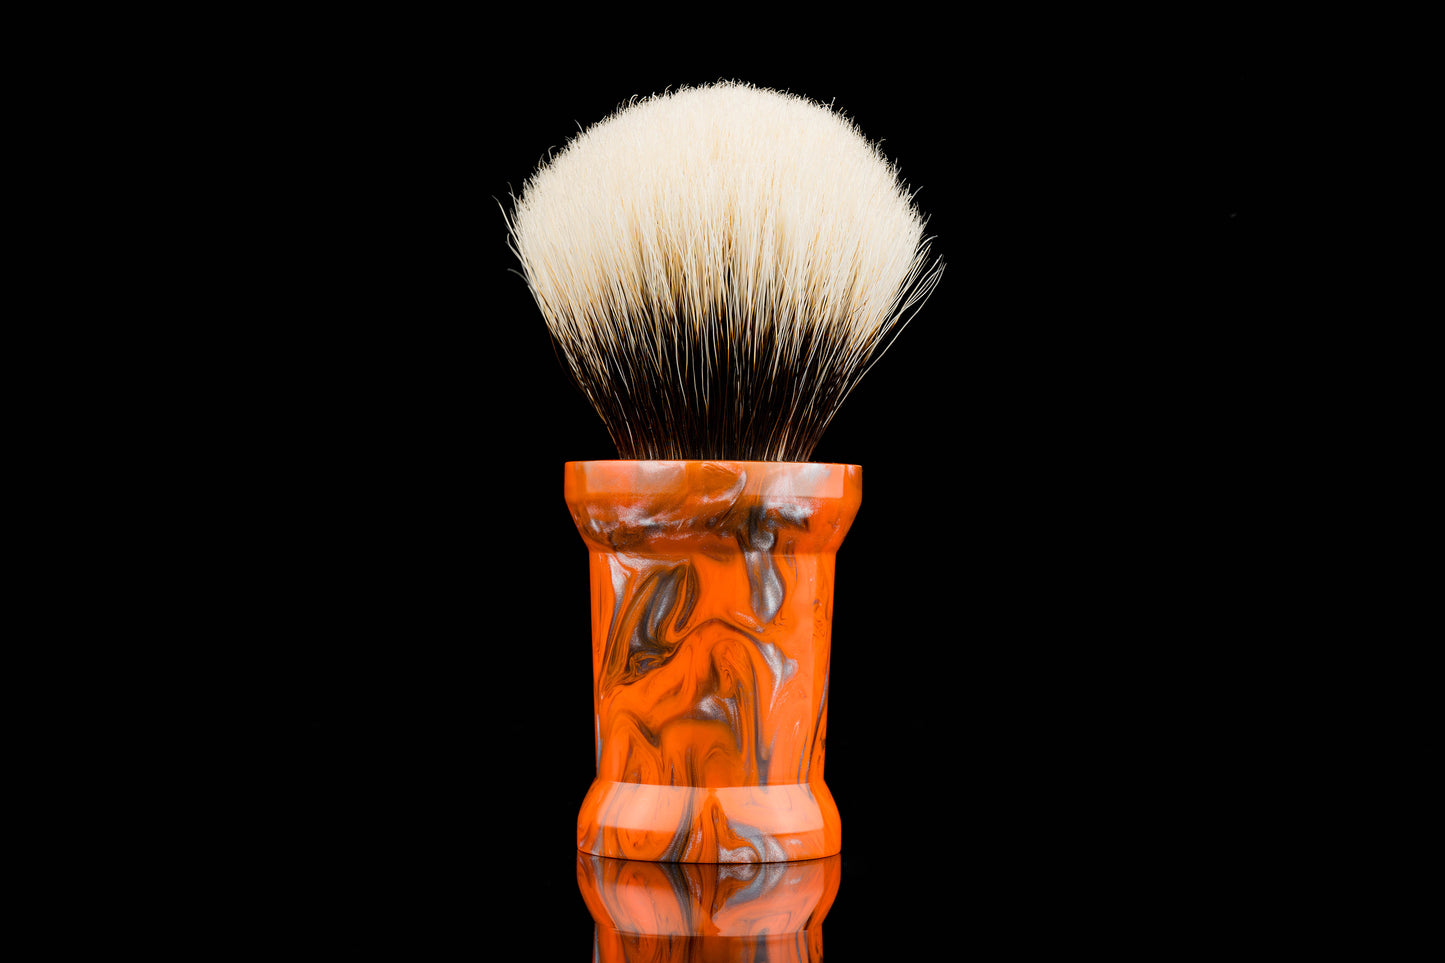 国士无双- Emperor ore shaving brush handle